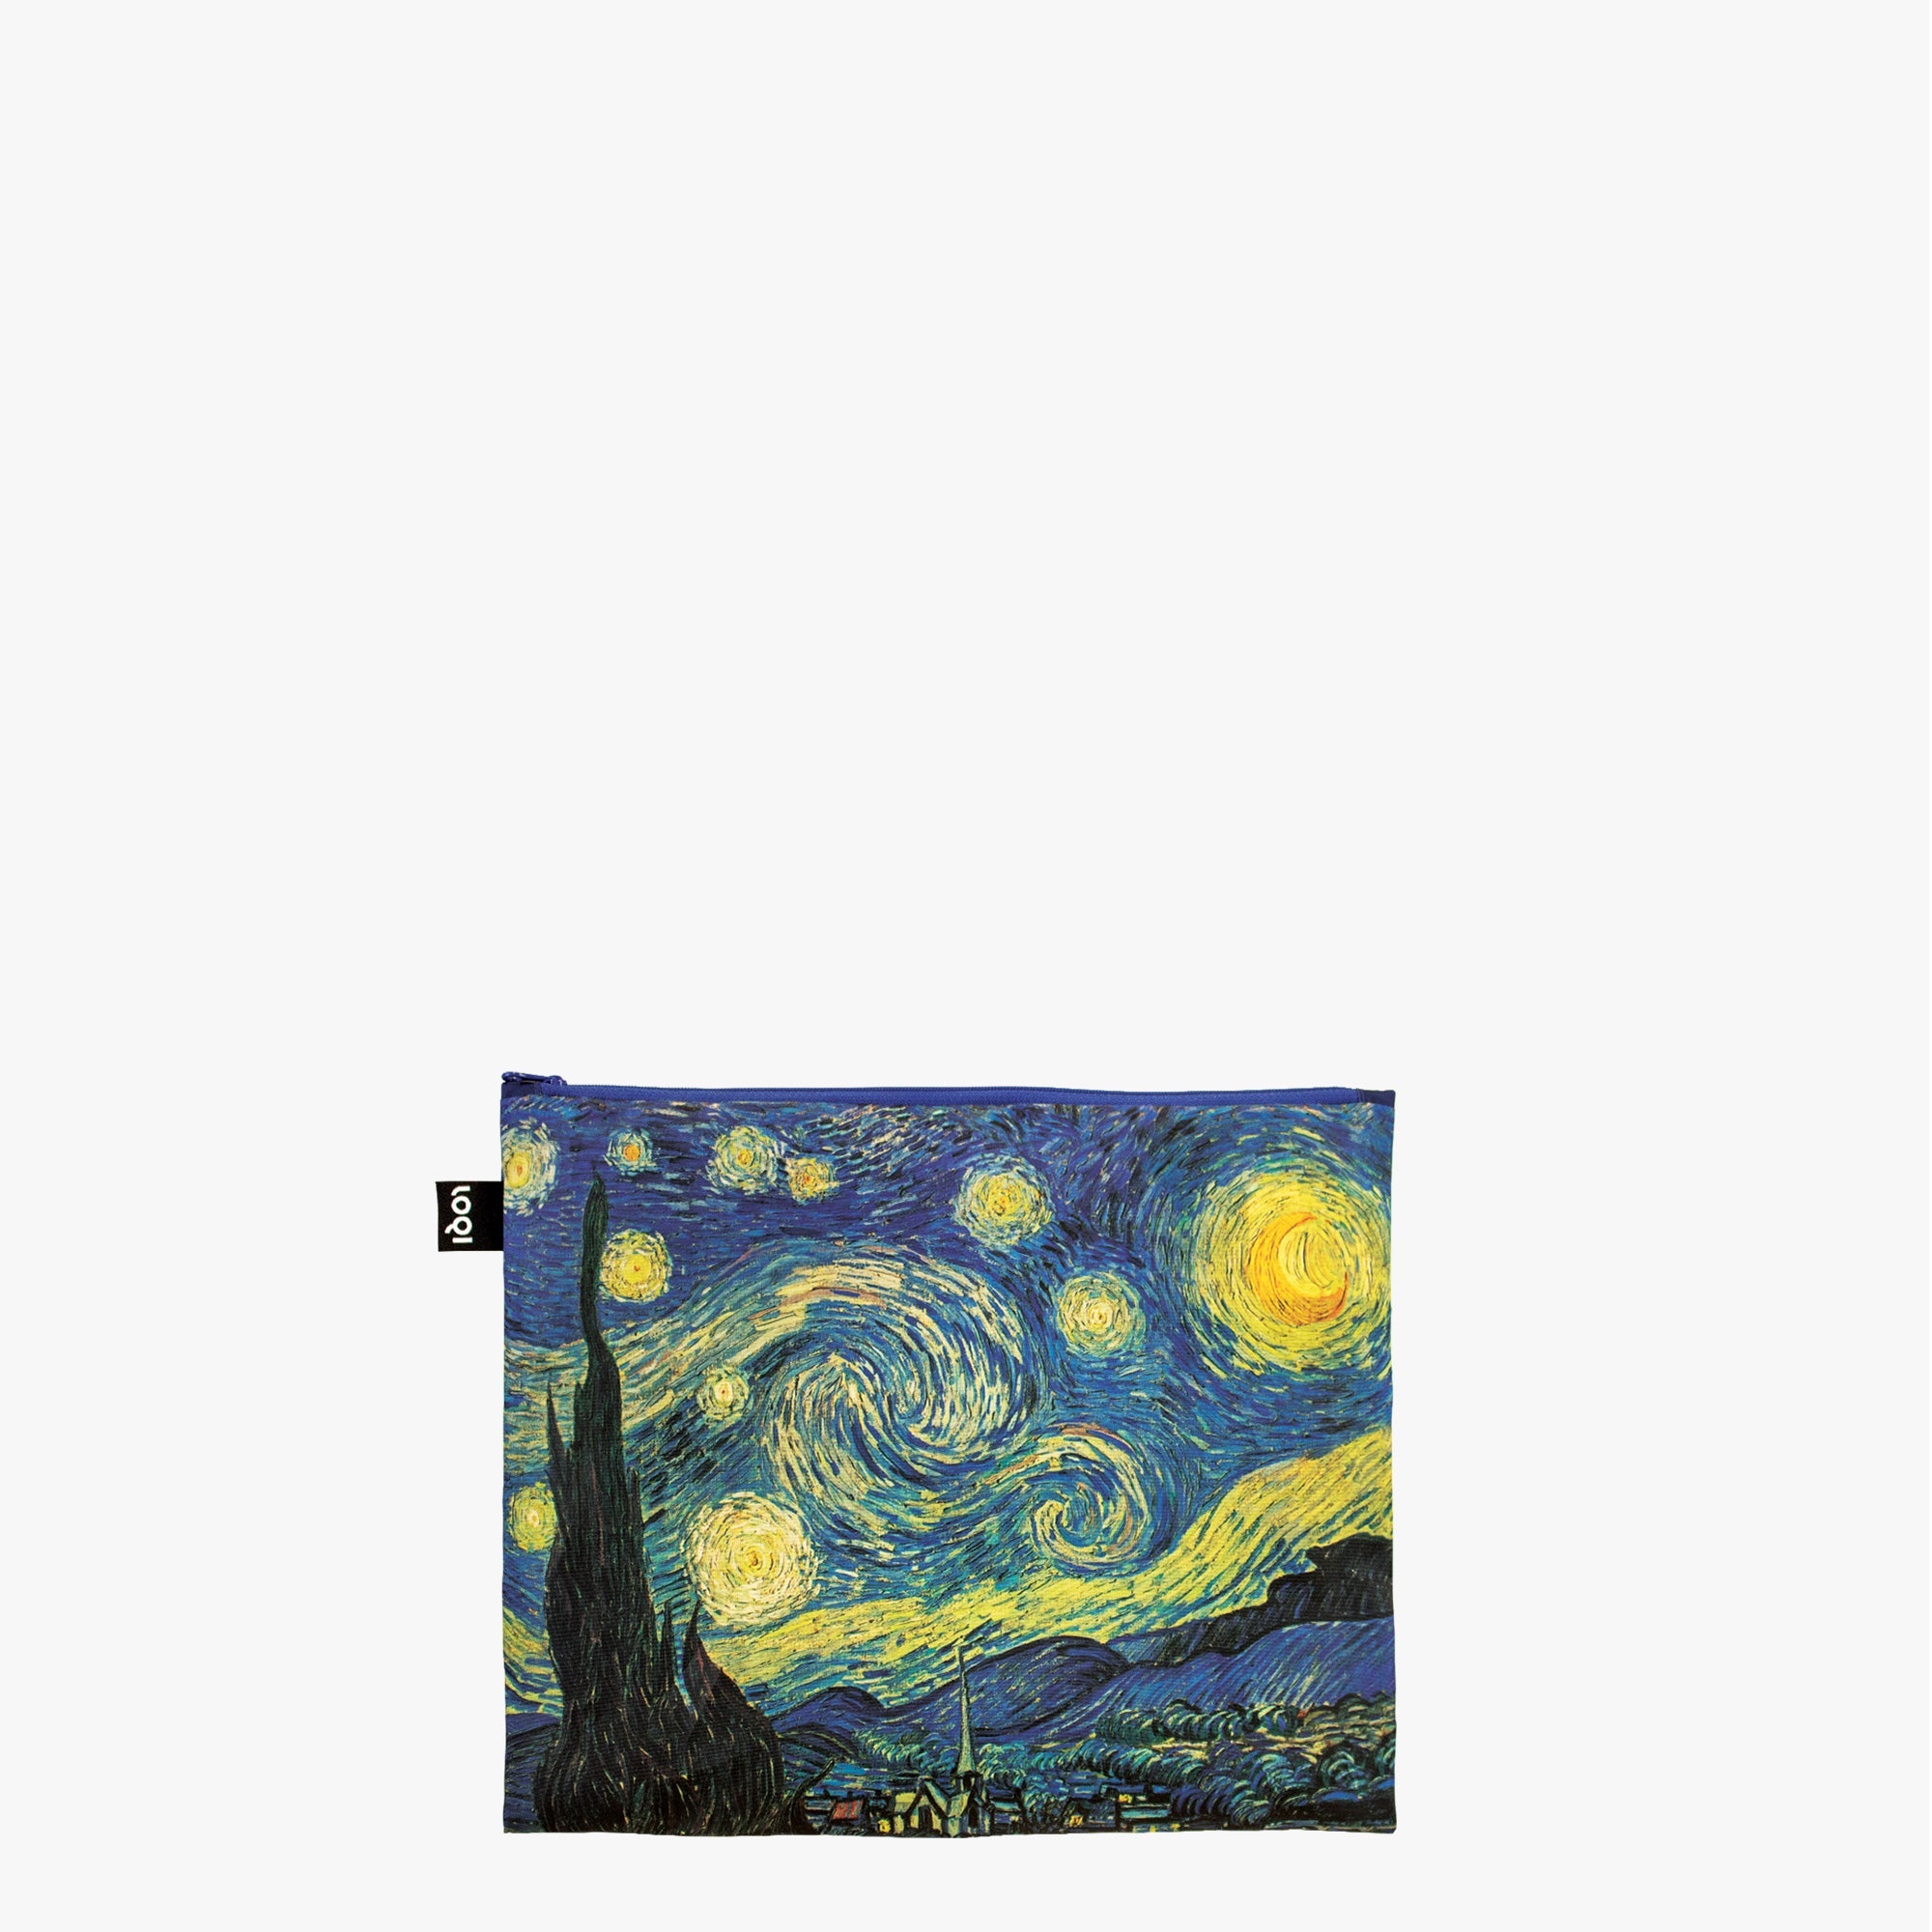 Van Gogh clutch bag, van gogh self-portrait bag, art bag, art clutch bag